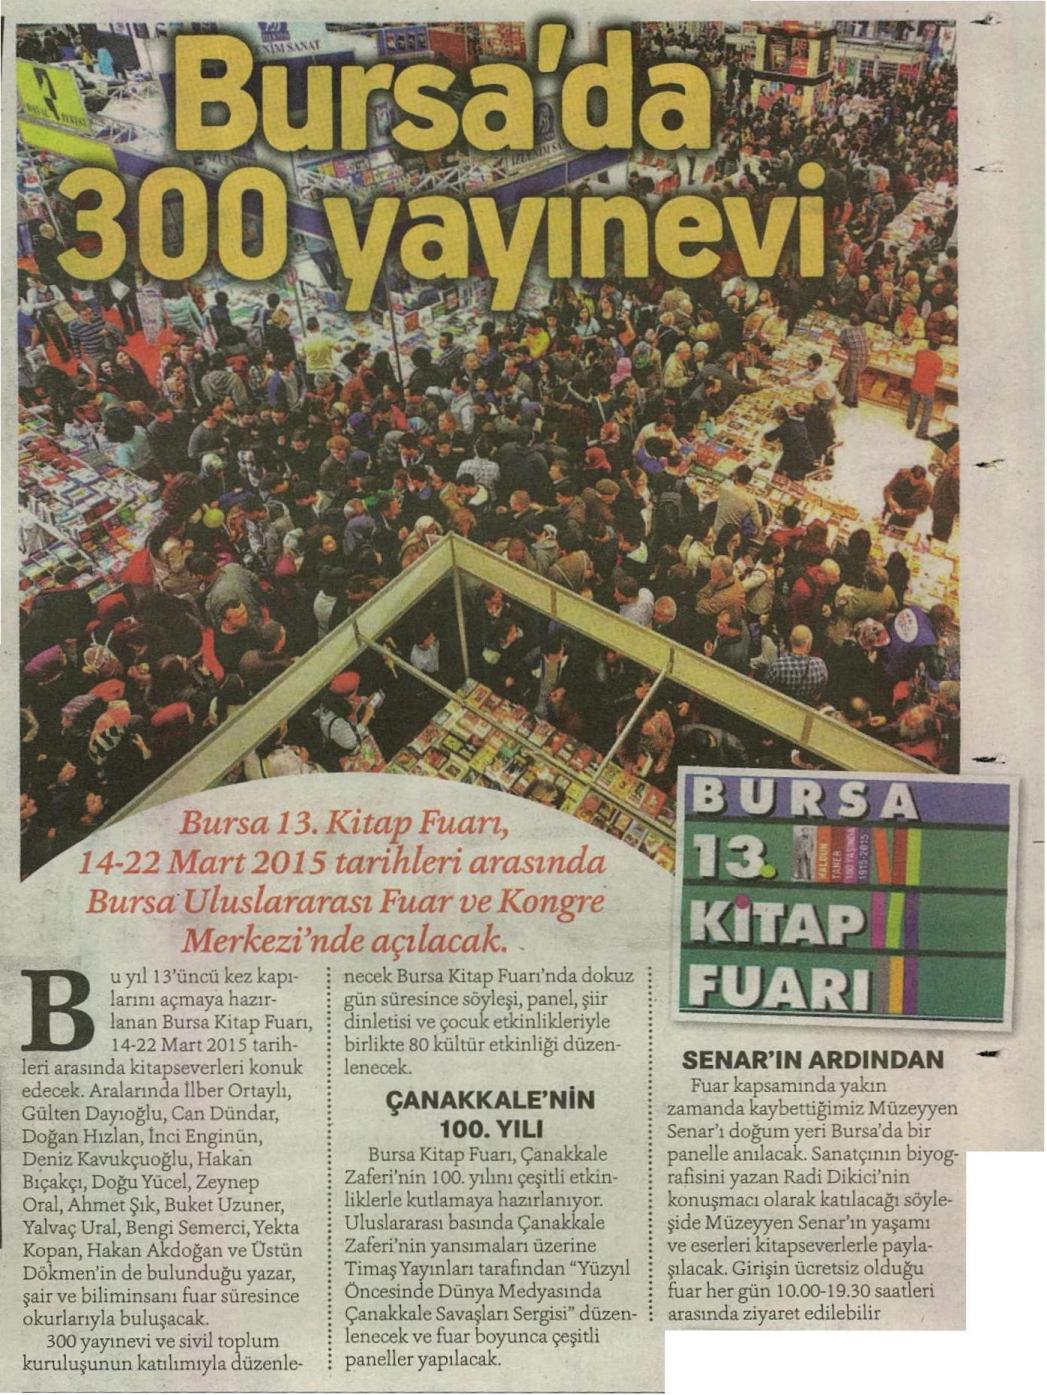 Bursa'da 300 yayınevi - HÜRRİYET KAMPÜS 11.03.2015 </p> <p> 